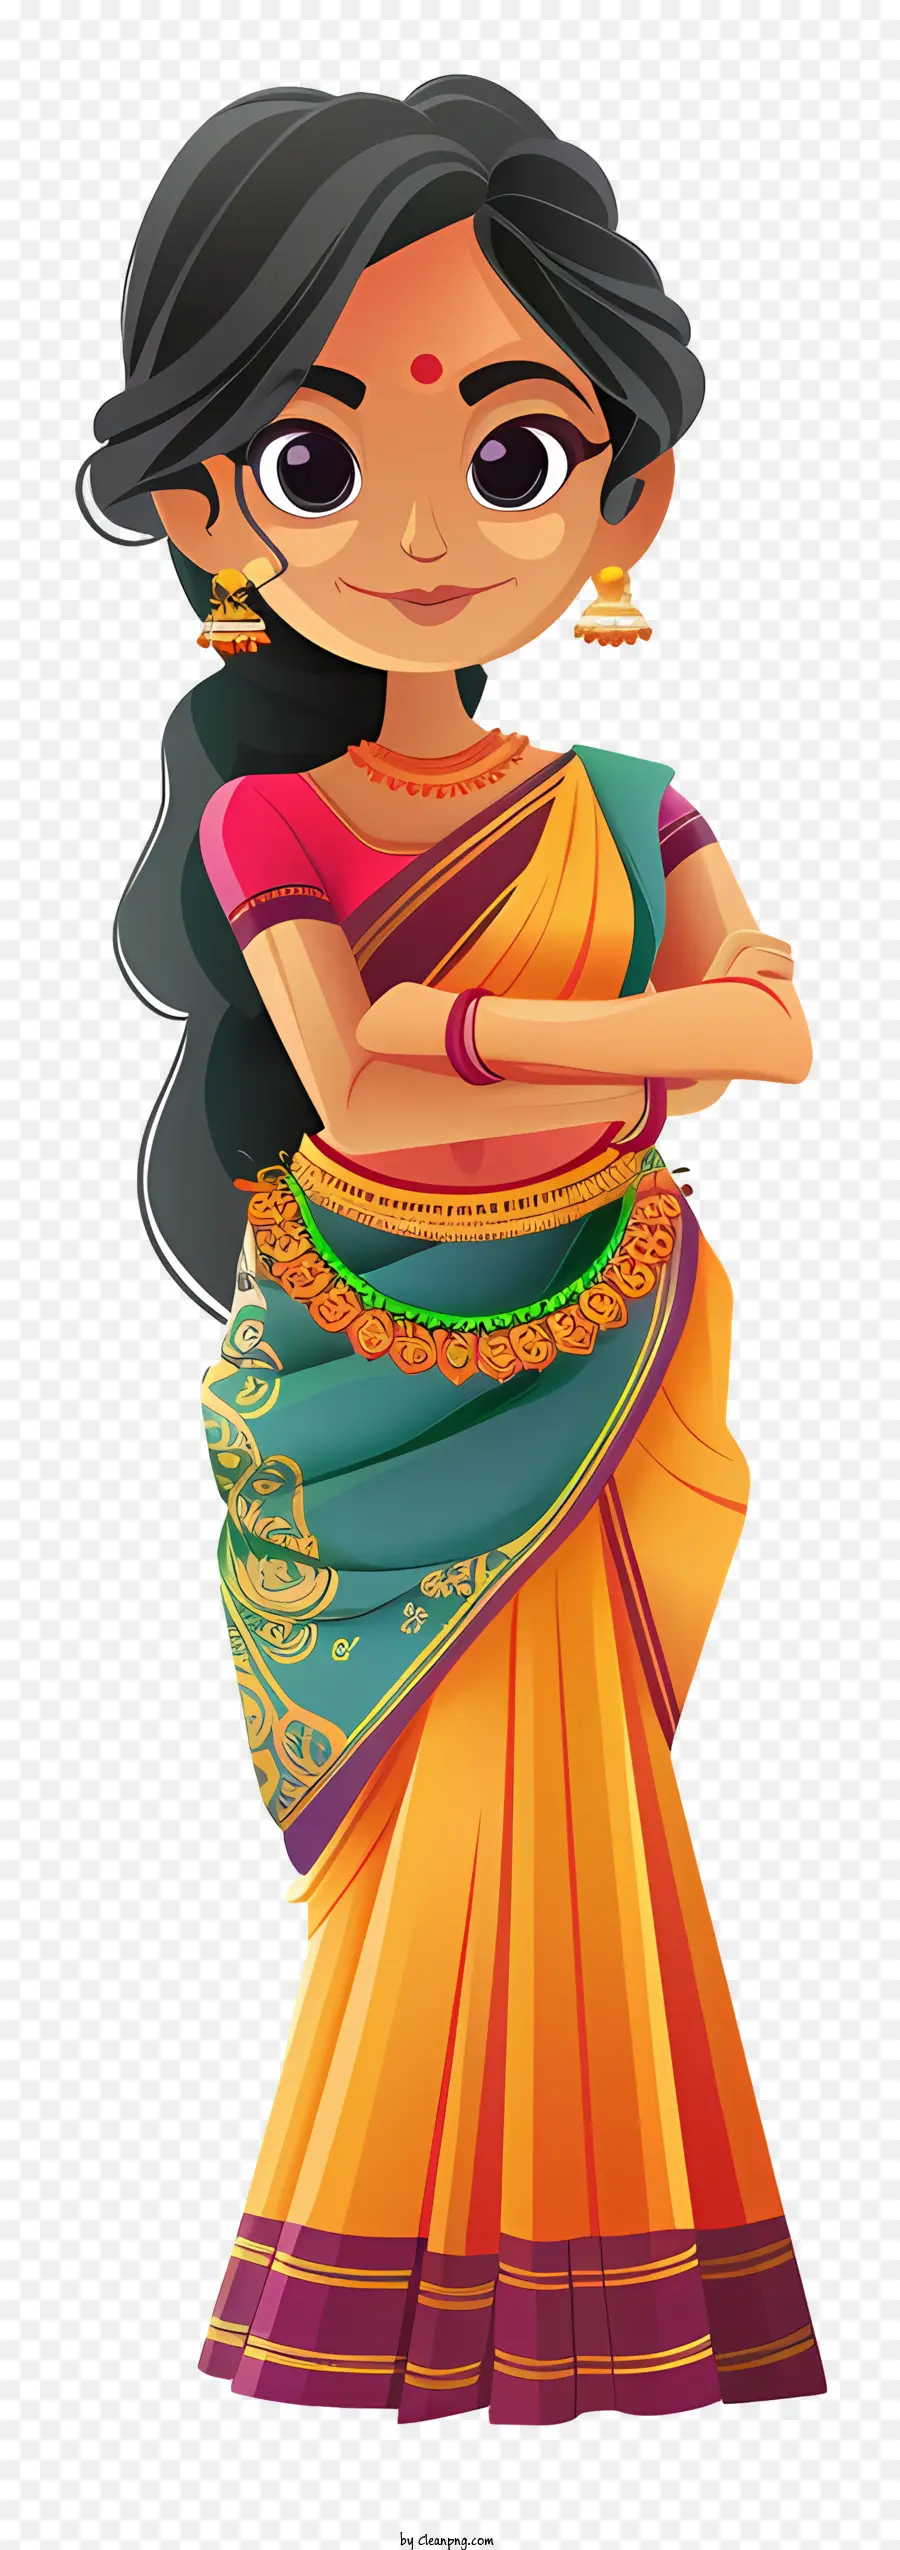 Người phụ nữ Ấn Độ hoạt hình trang phục truyền thống Ấn Độ Sari Thời trang Ấn Độ Quần áo truyền thống - Cô gái Ấn Độ truyền thống trong sari đầy màu sắc